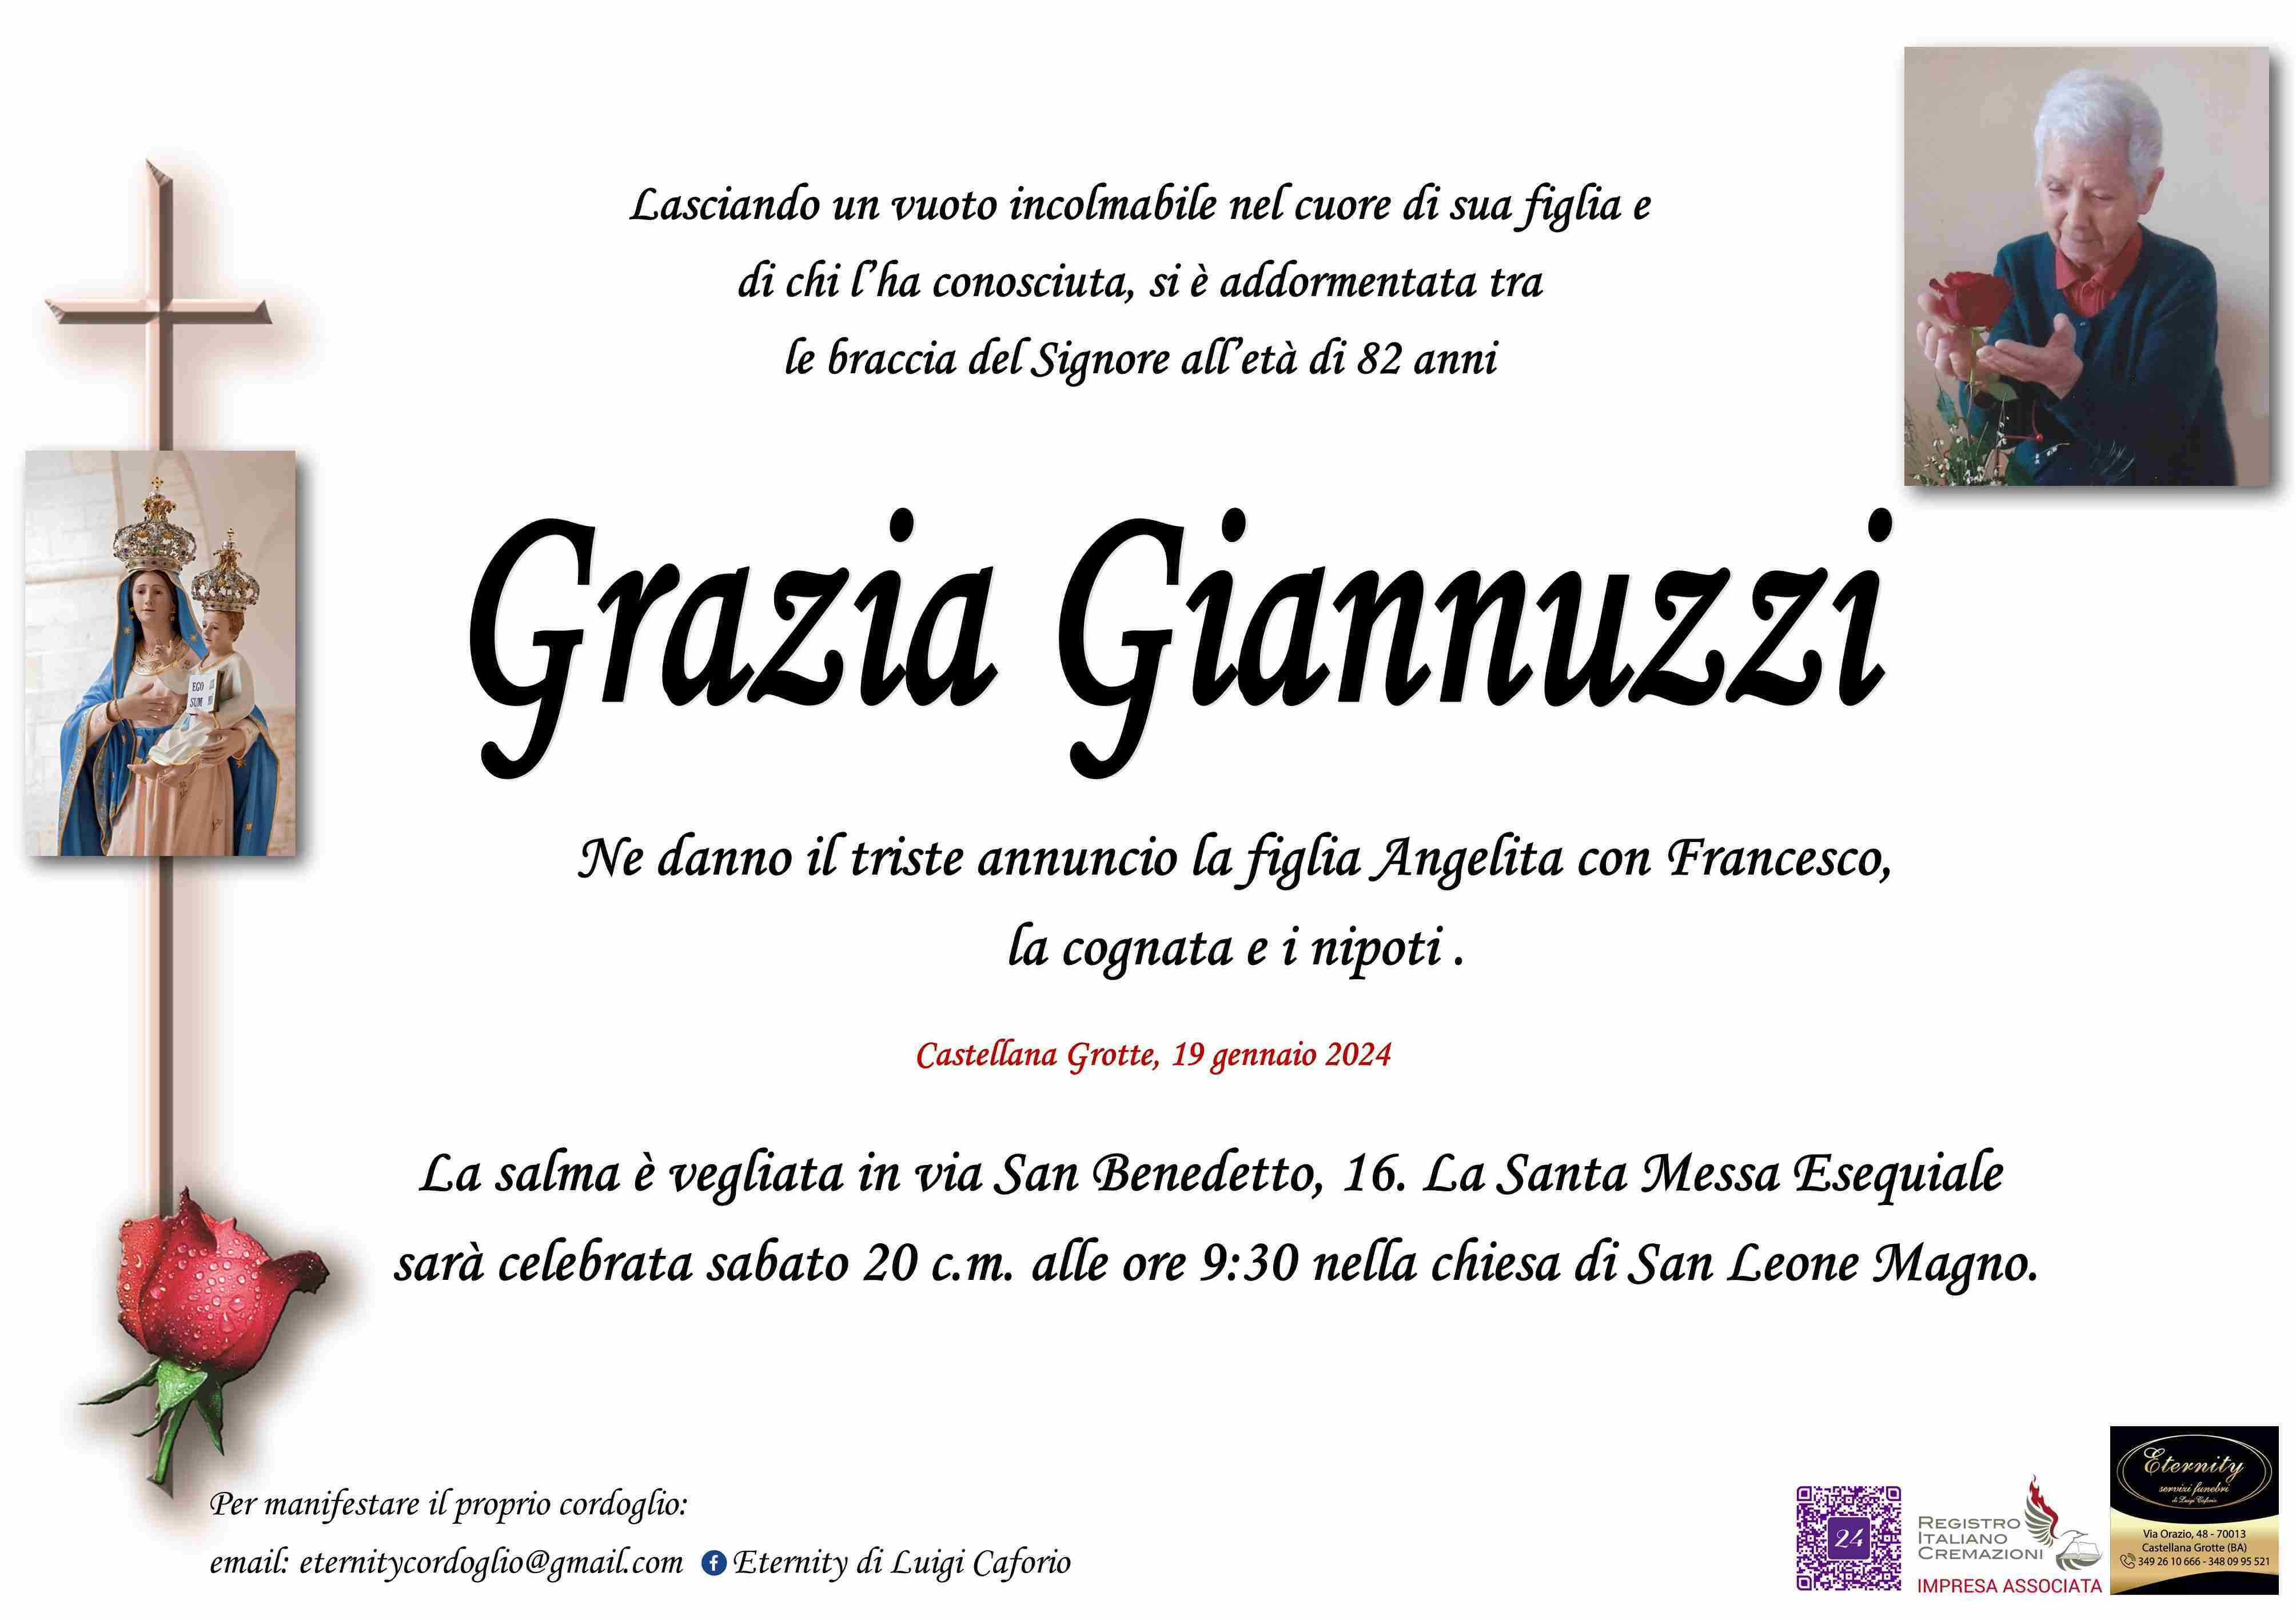 Grazia Giannuzzi